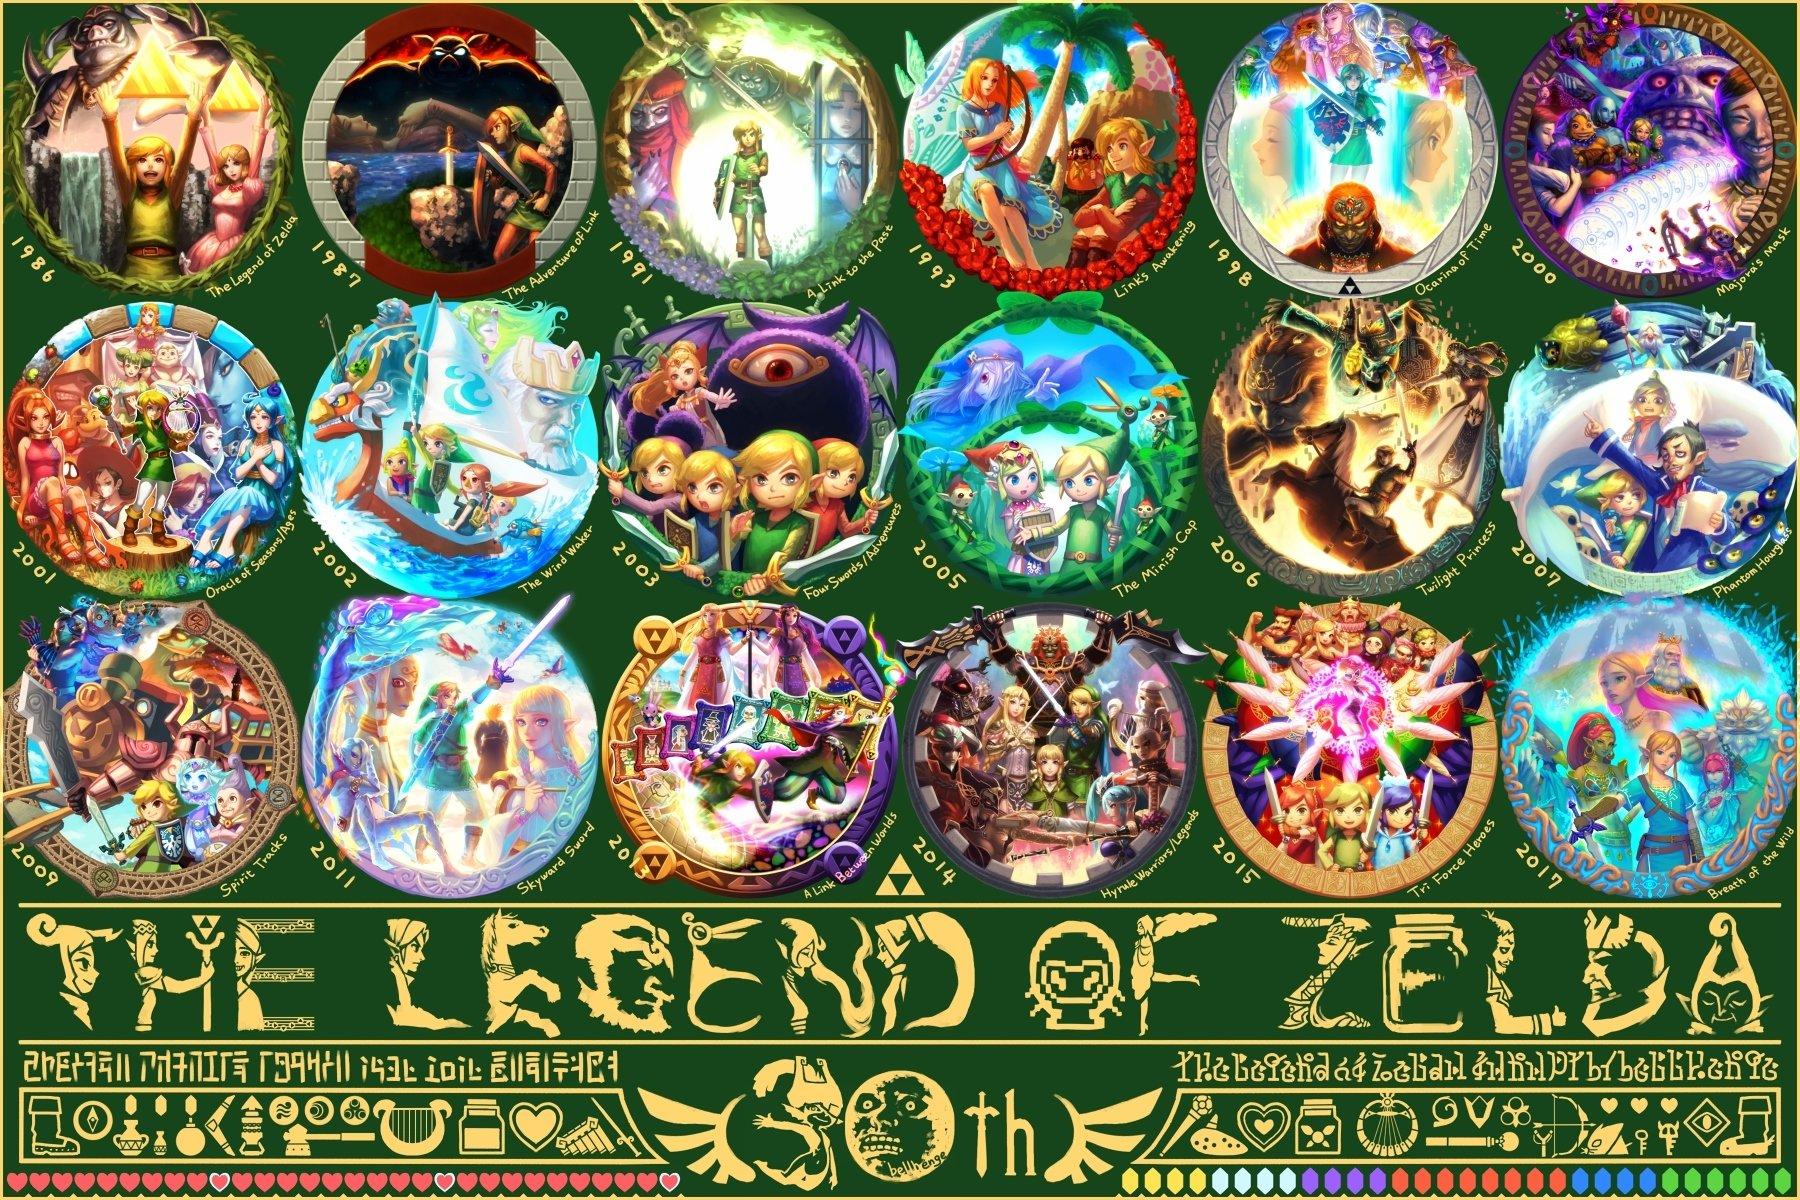 Zelda II: The Adventure of Link HD Wallpaper. Background